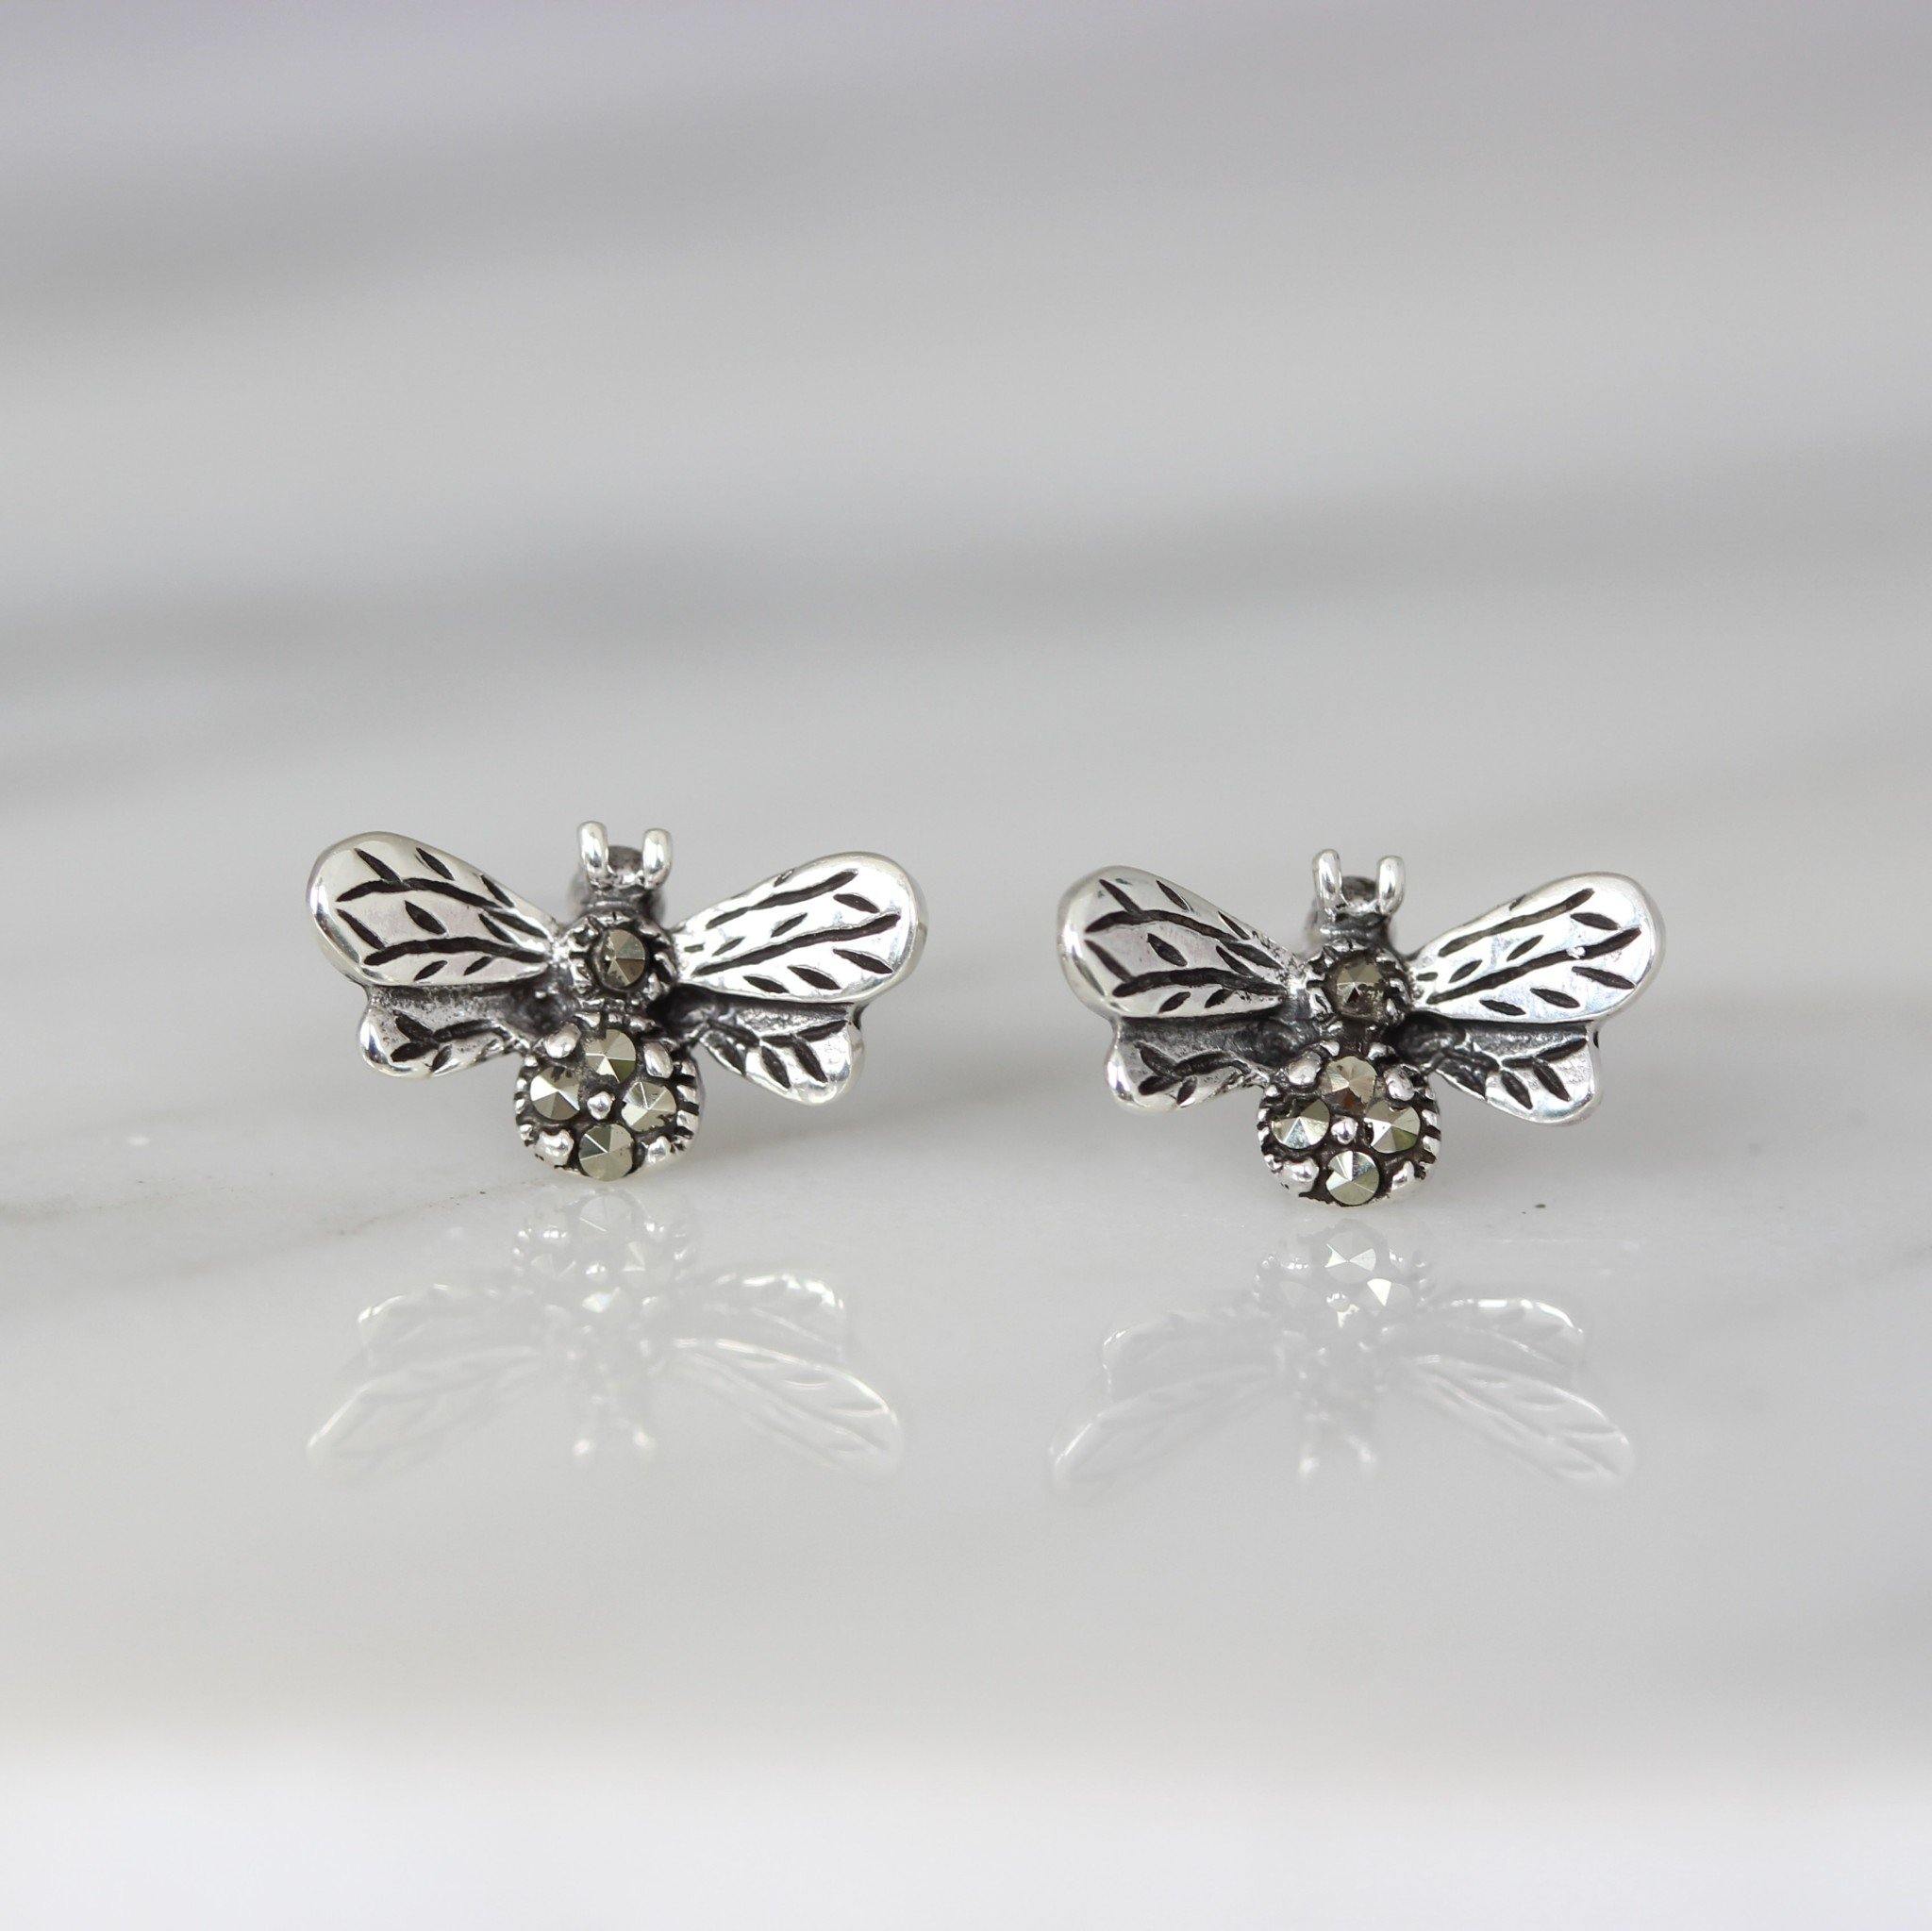 Sterling Silver Marcasite Vintage Style Bumblebee Bee Stud Earrings - STERLING SILVER DESIGNS